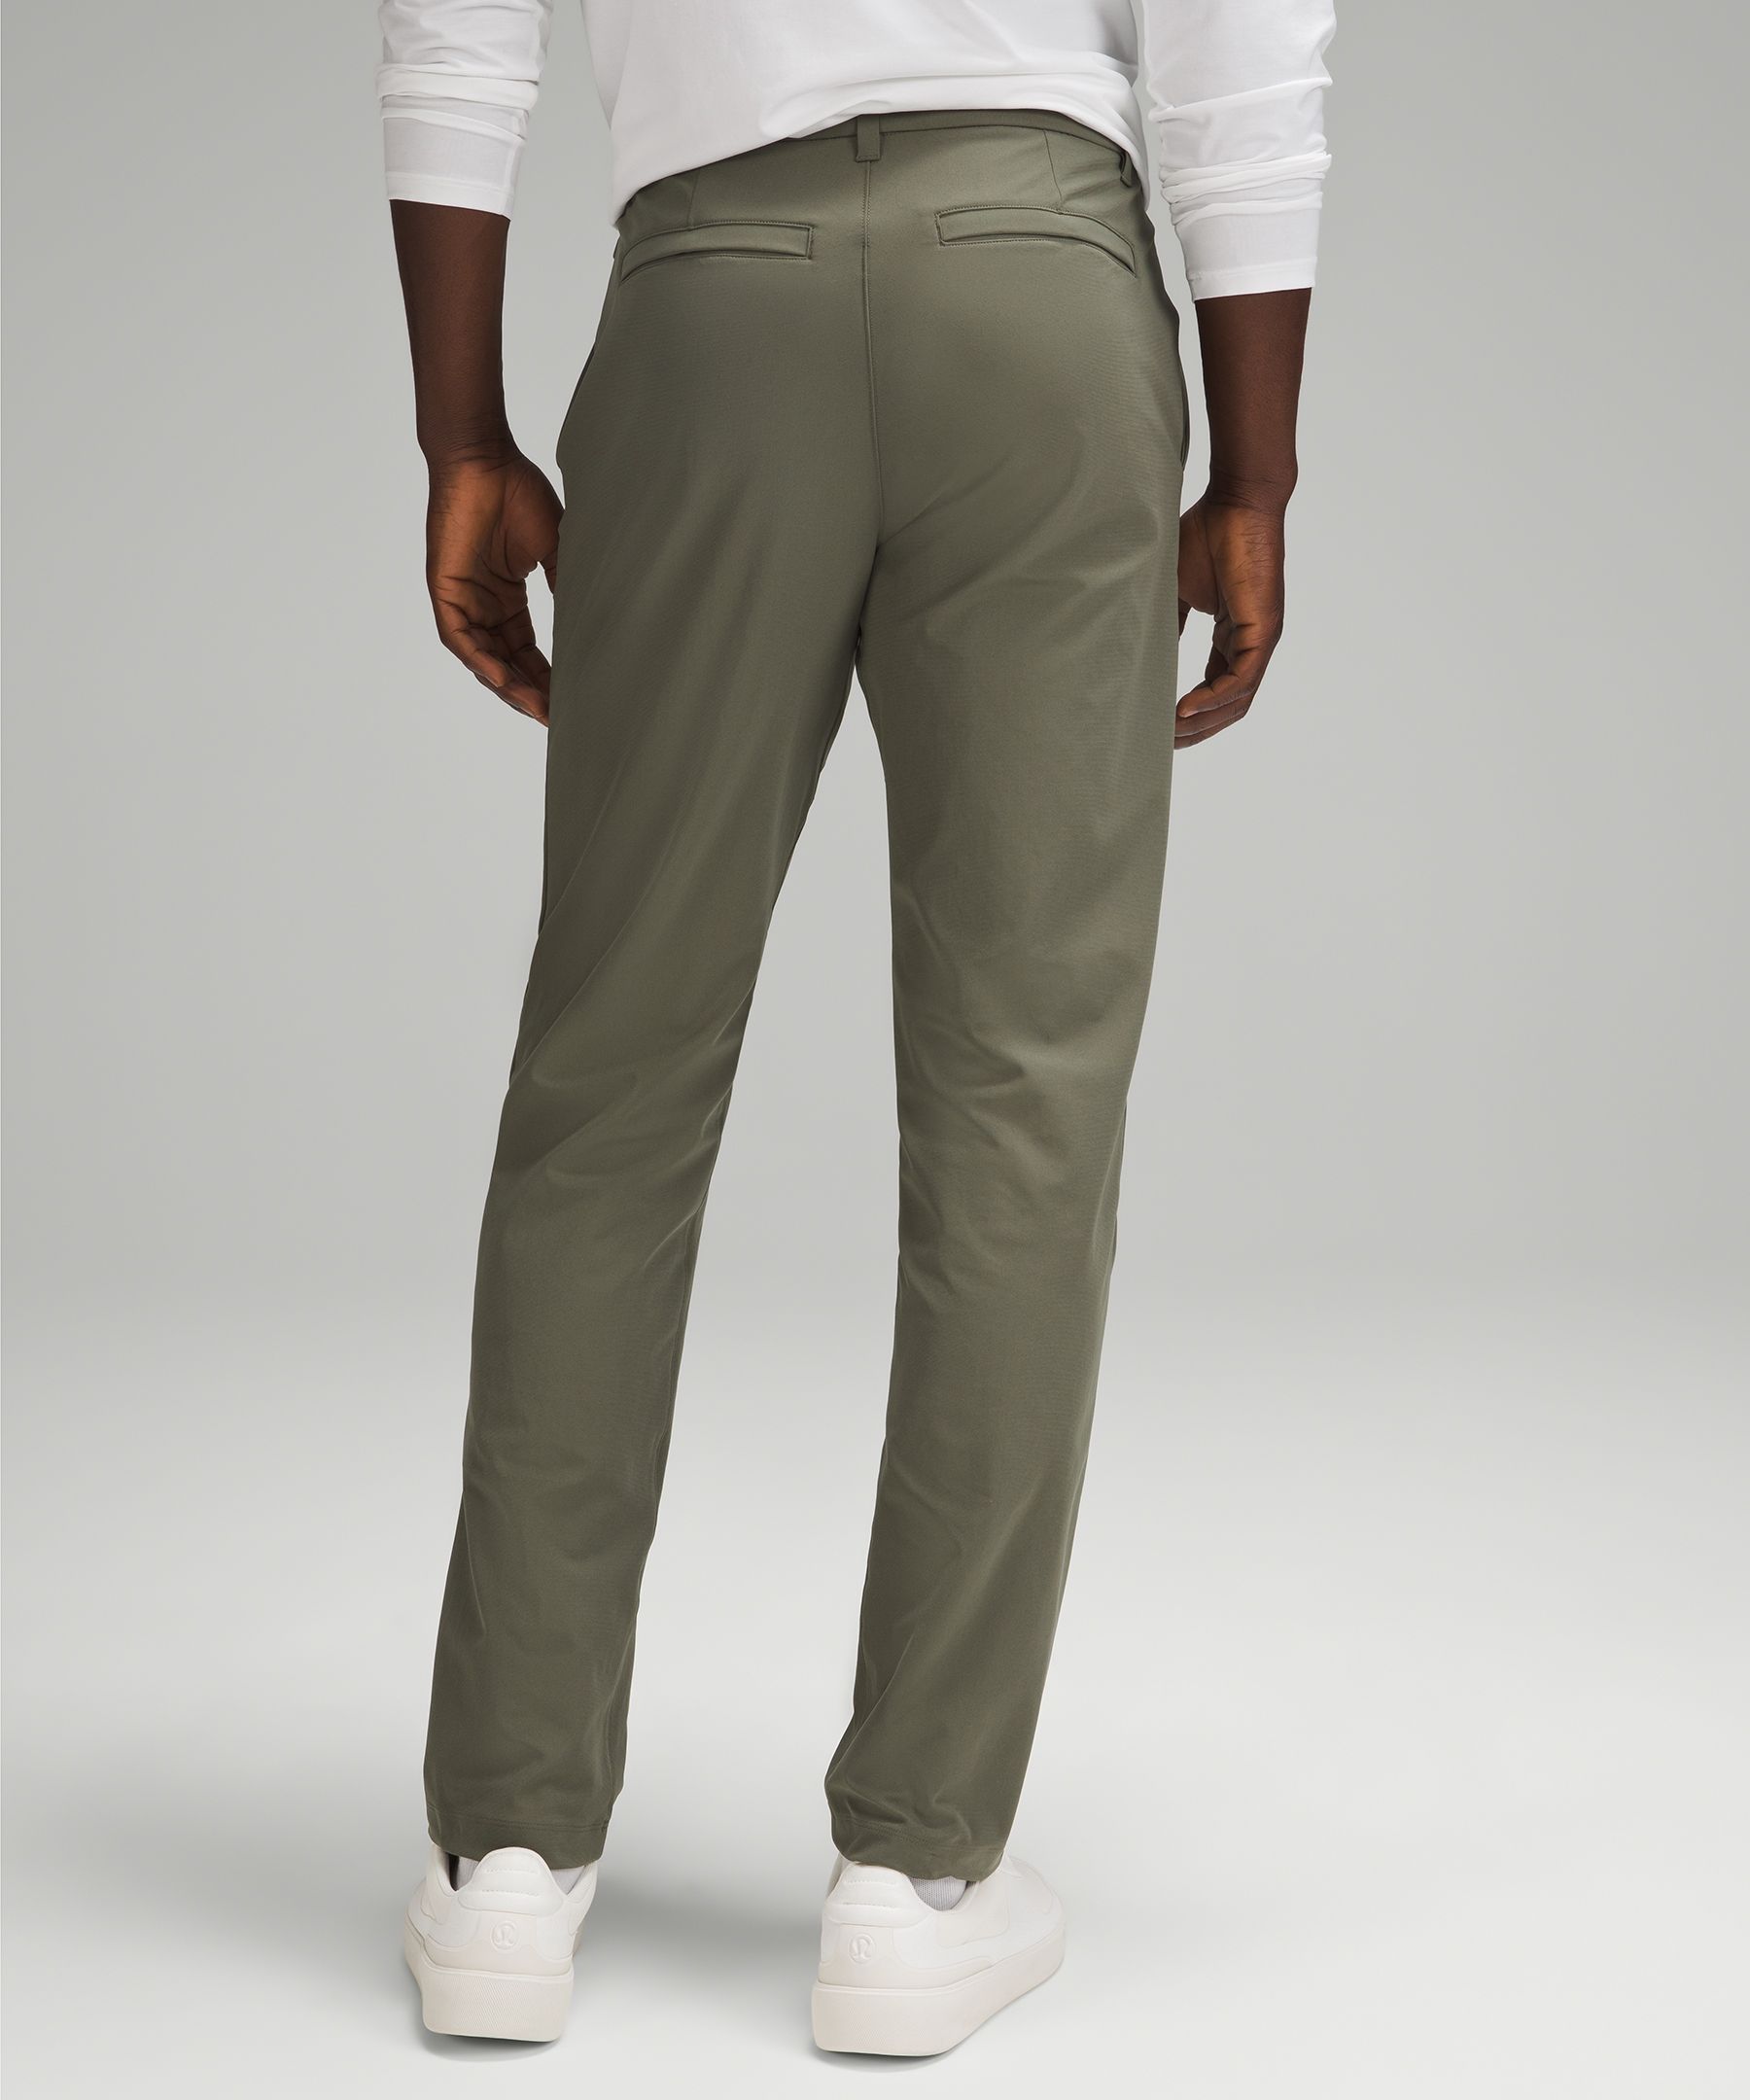 ABC Classic-Fit 5 Pocket Pant 30L *Warpstreme, Men's Trousers